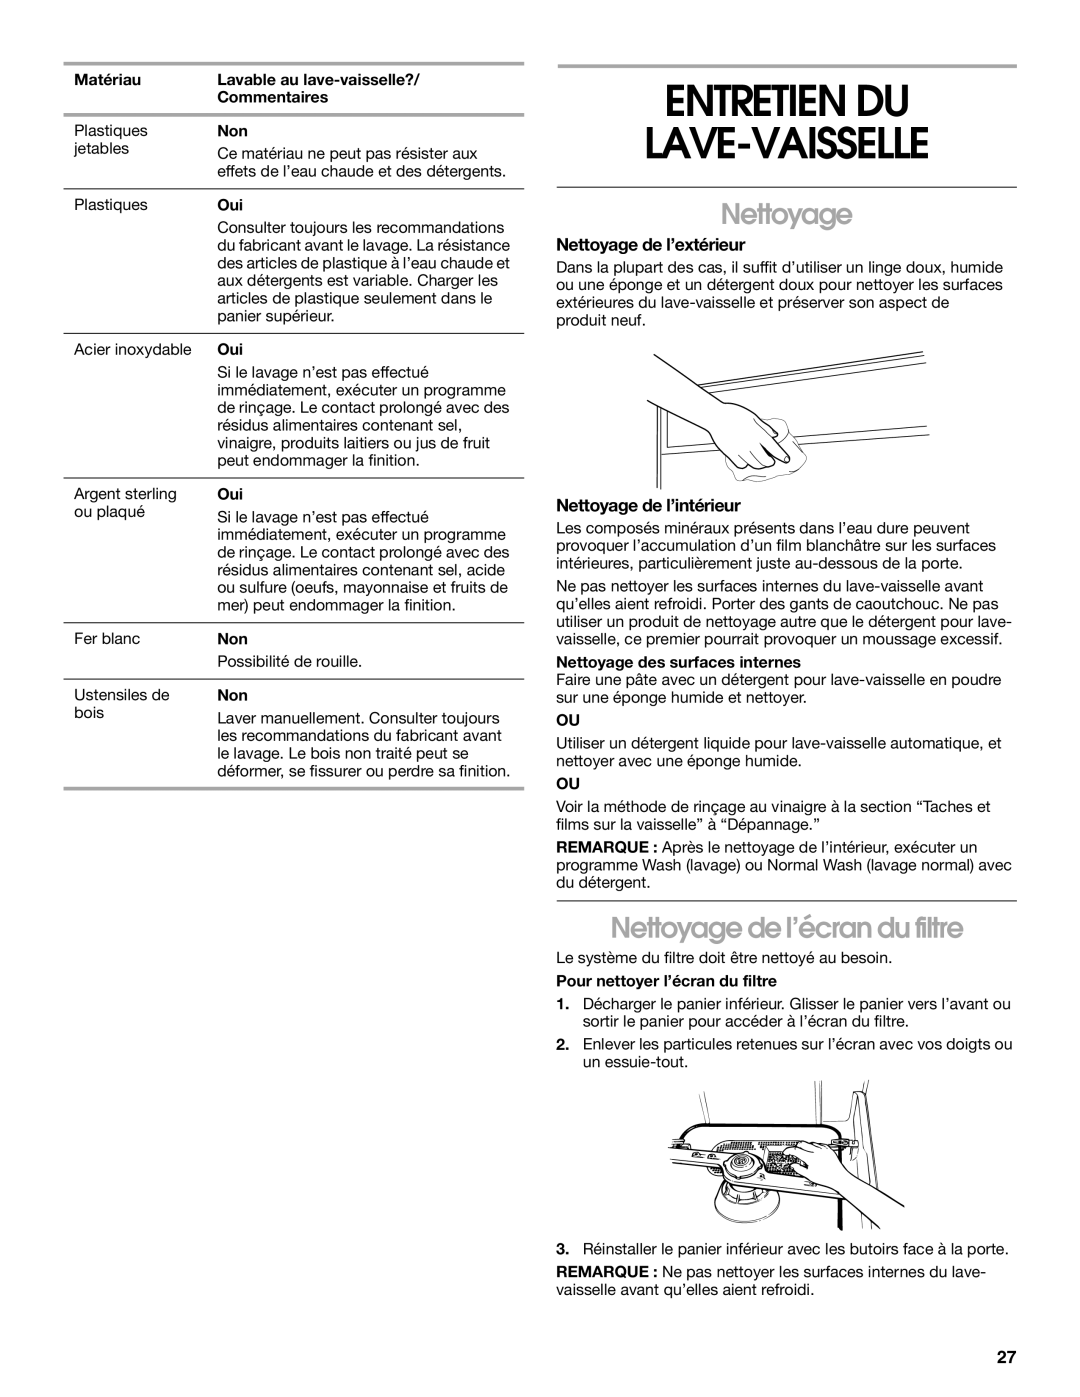 Roper rud4000 manual Entretien Du Lave-Vaisselle, Nettoyage de l’écran du filtre, Nettoyage de l’extérieur 